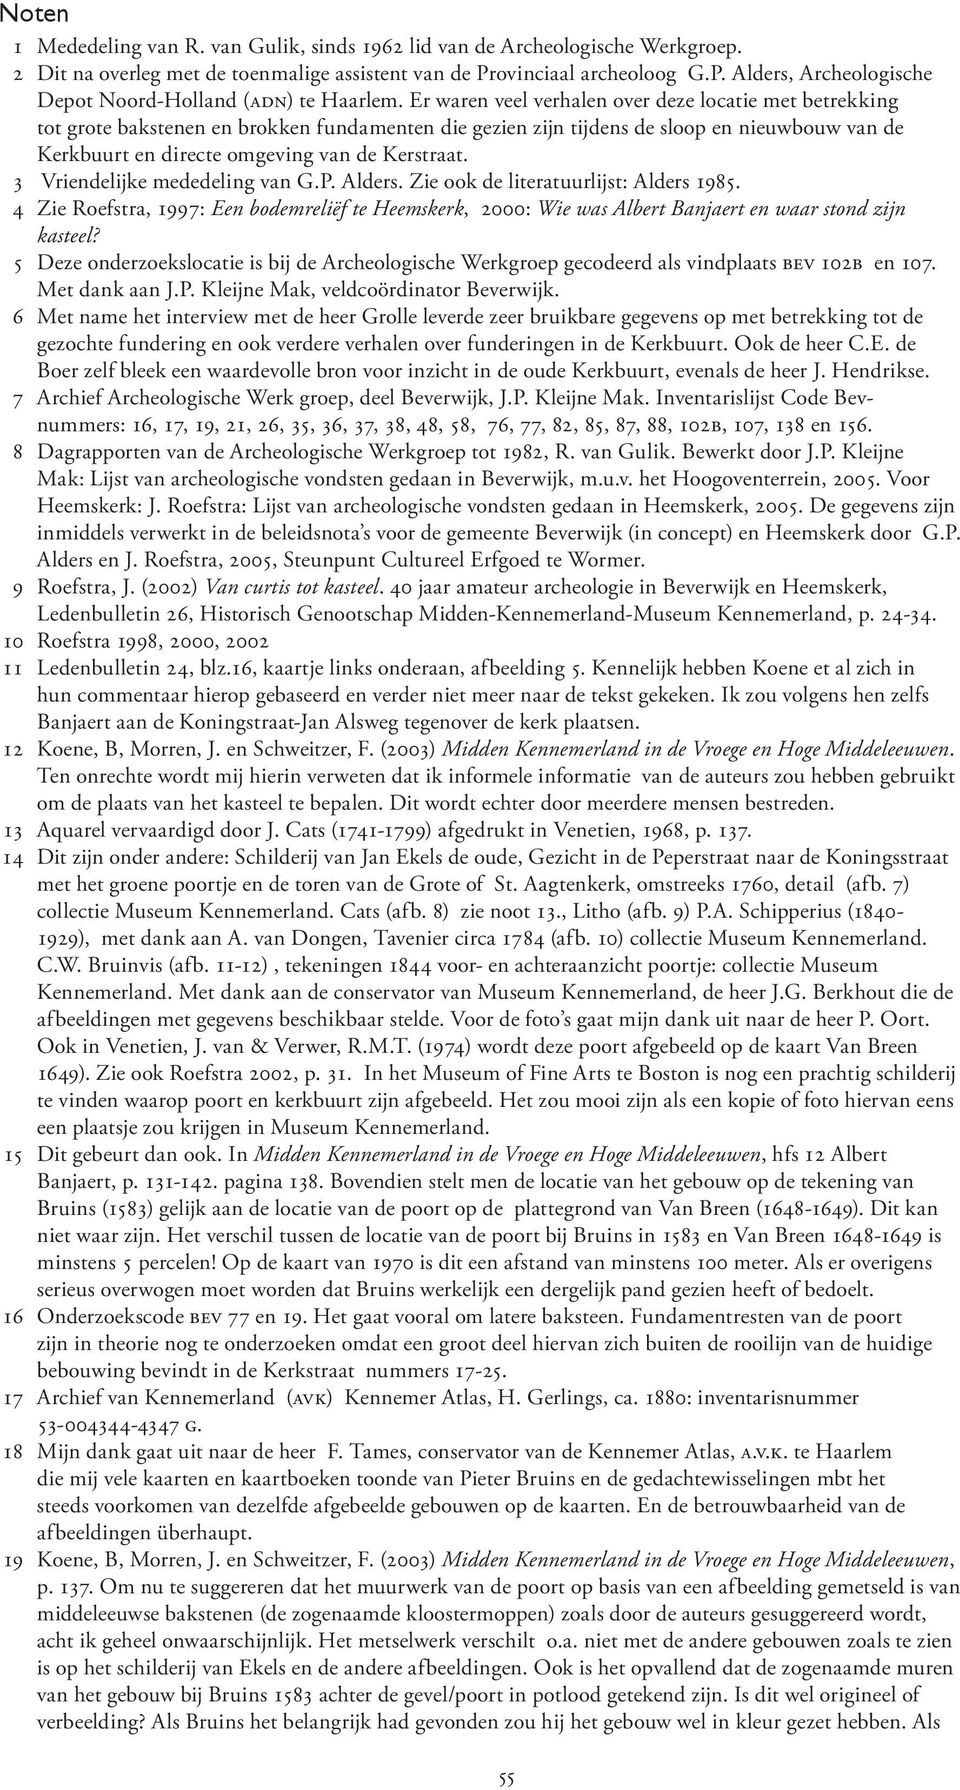 3 Vriendelijke mededeling van G.P. Alders. Zie ook de literatuurlijst: Alders 1985. 4 Zie Roefstra, 1997: Een bodemreliëf te Heemskerk, 2000: Wie was Albert Banjaert en waar stond zijn kasteel?